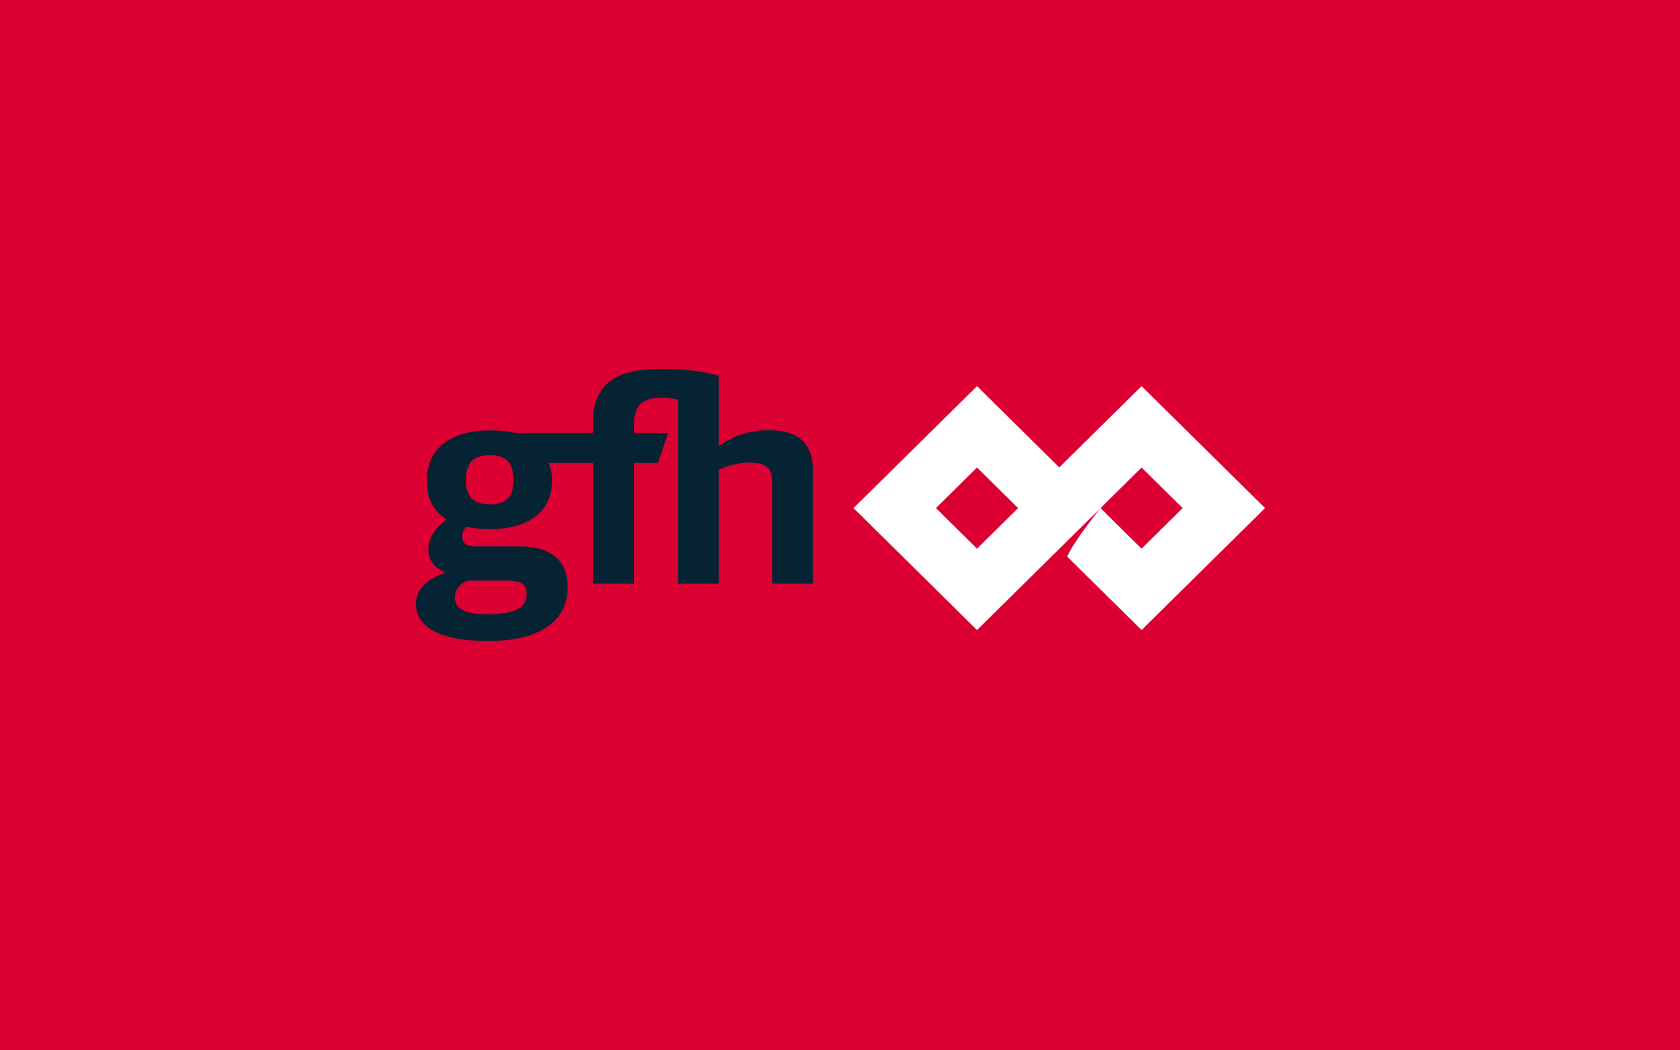 GFH. Brand logo with white icon